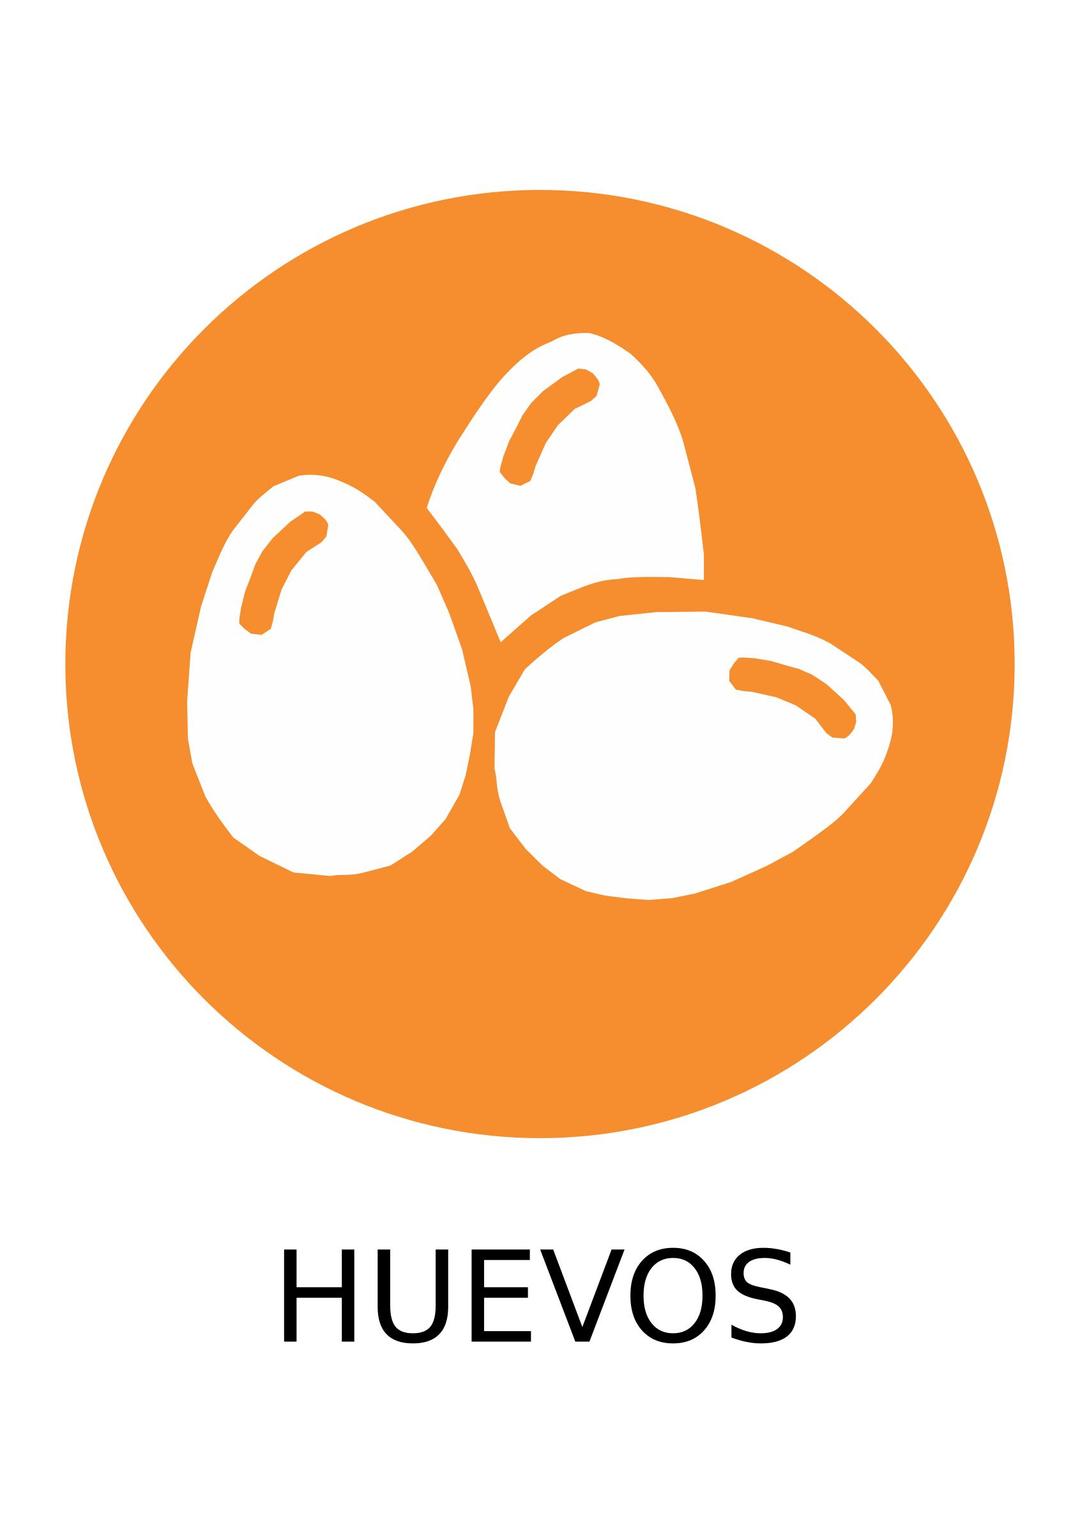  Alérgeno Huevo/Egg png transparent